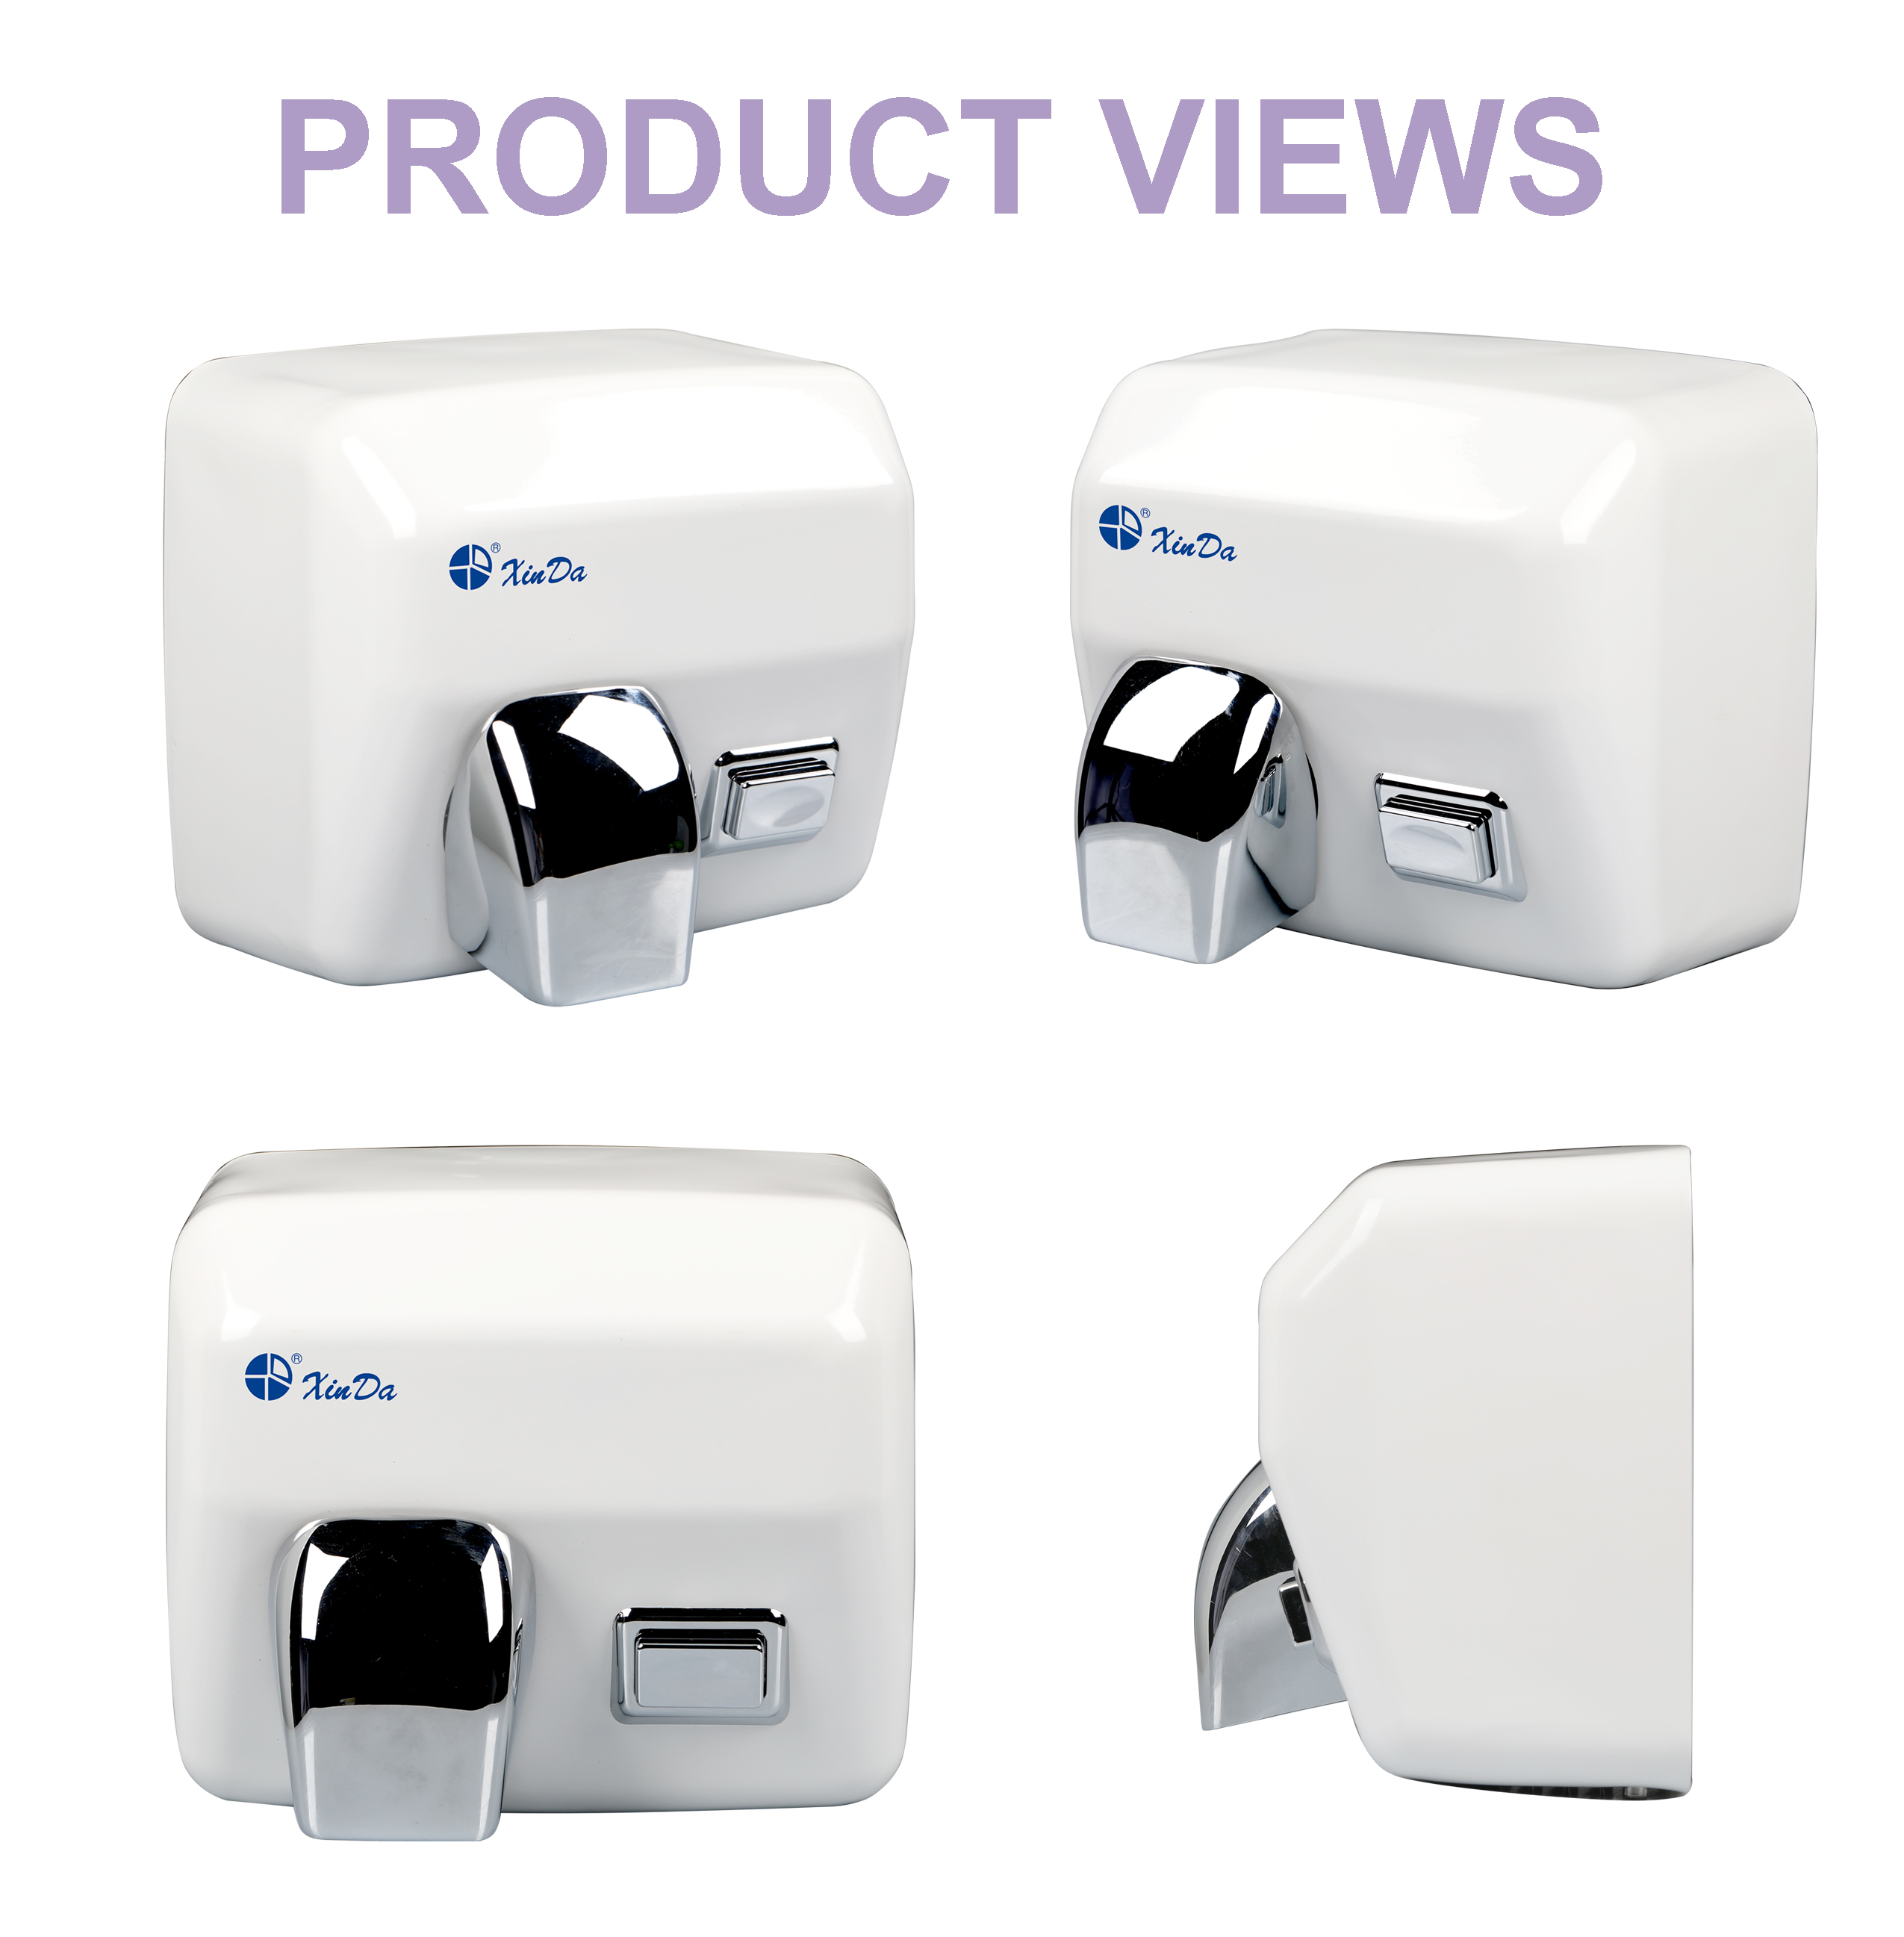 O XinDa GSQ250C Branco Atacado de alta qualidade secadores de mãos automáticos operados por bateria Secador de Mãos